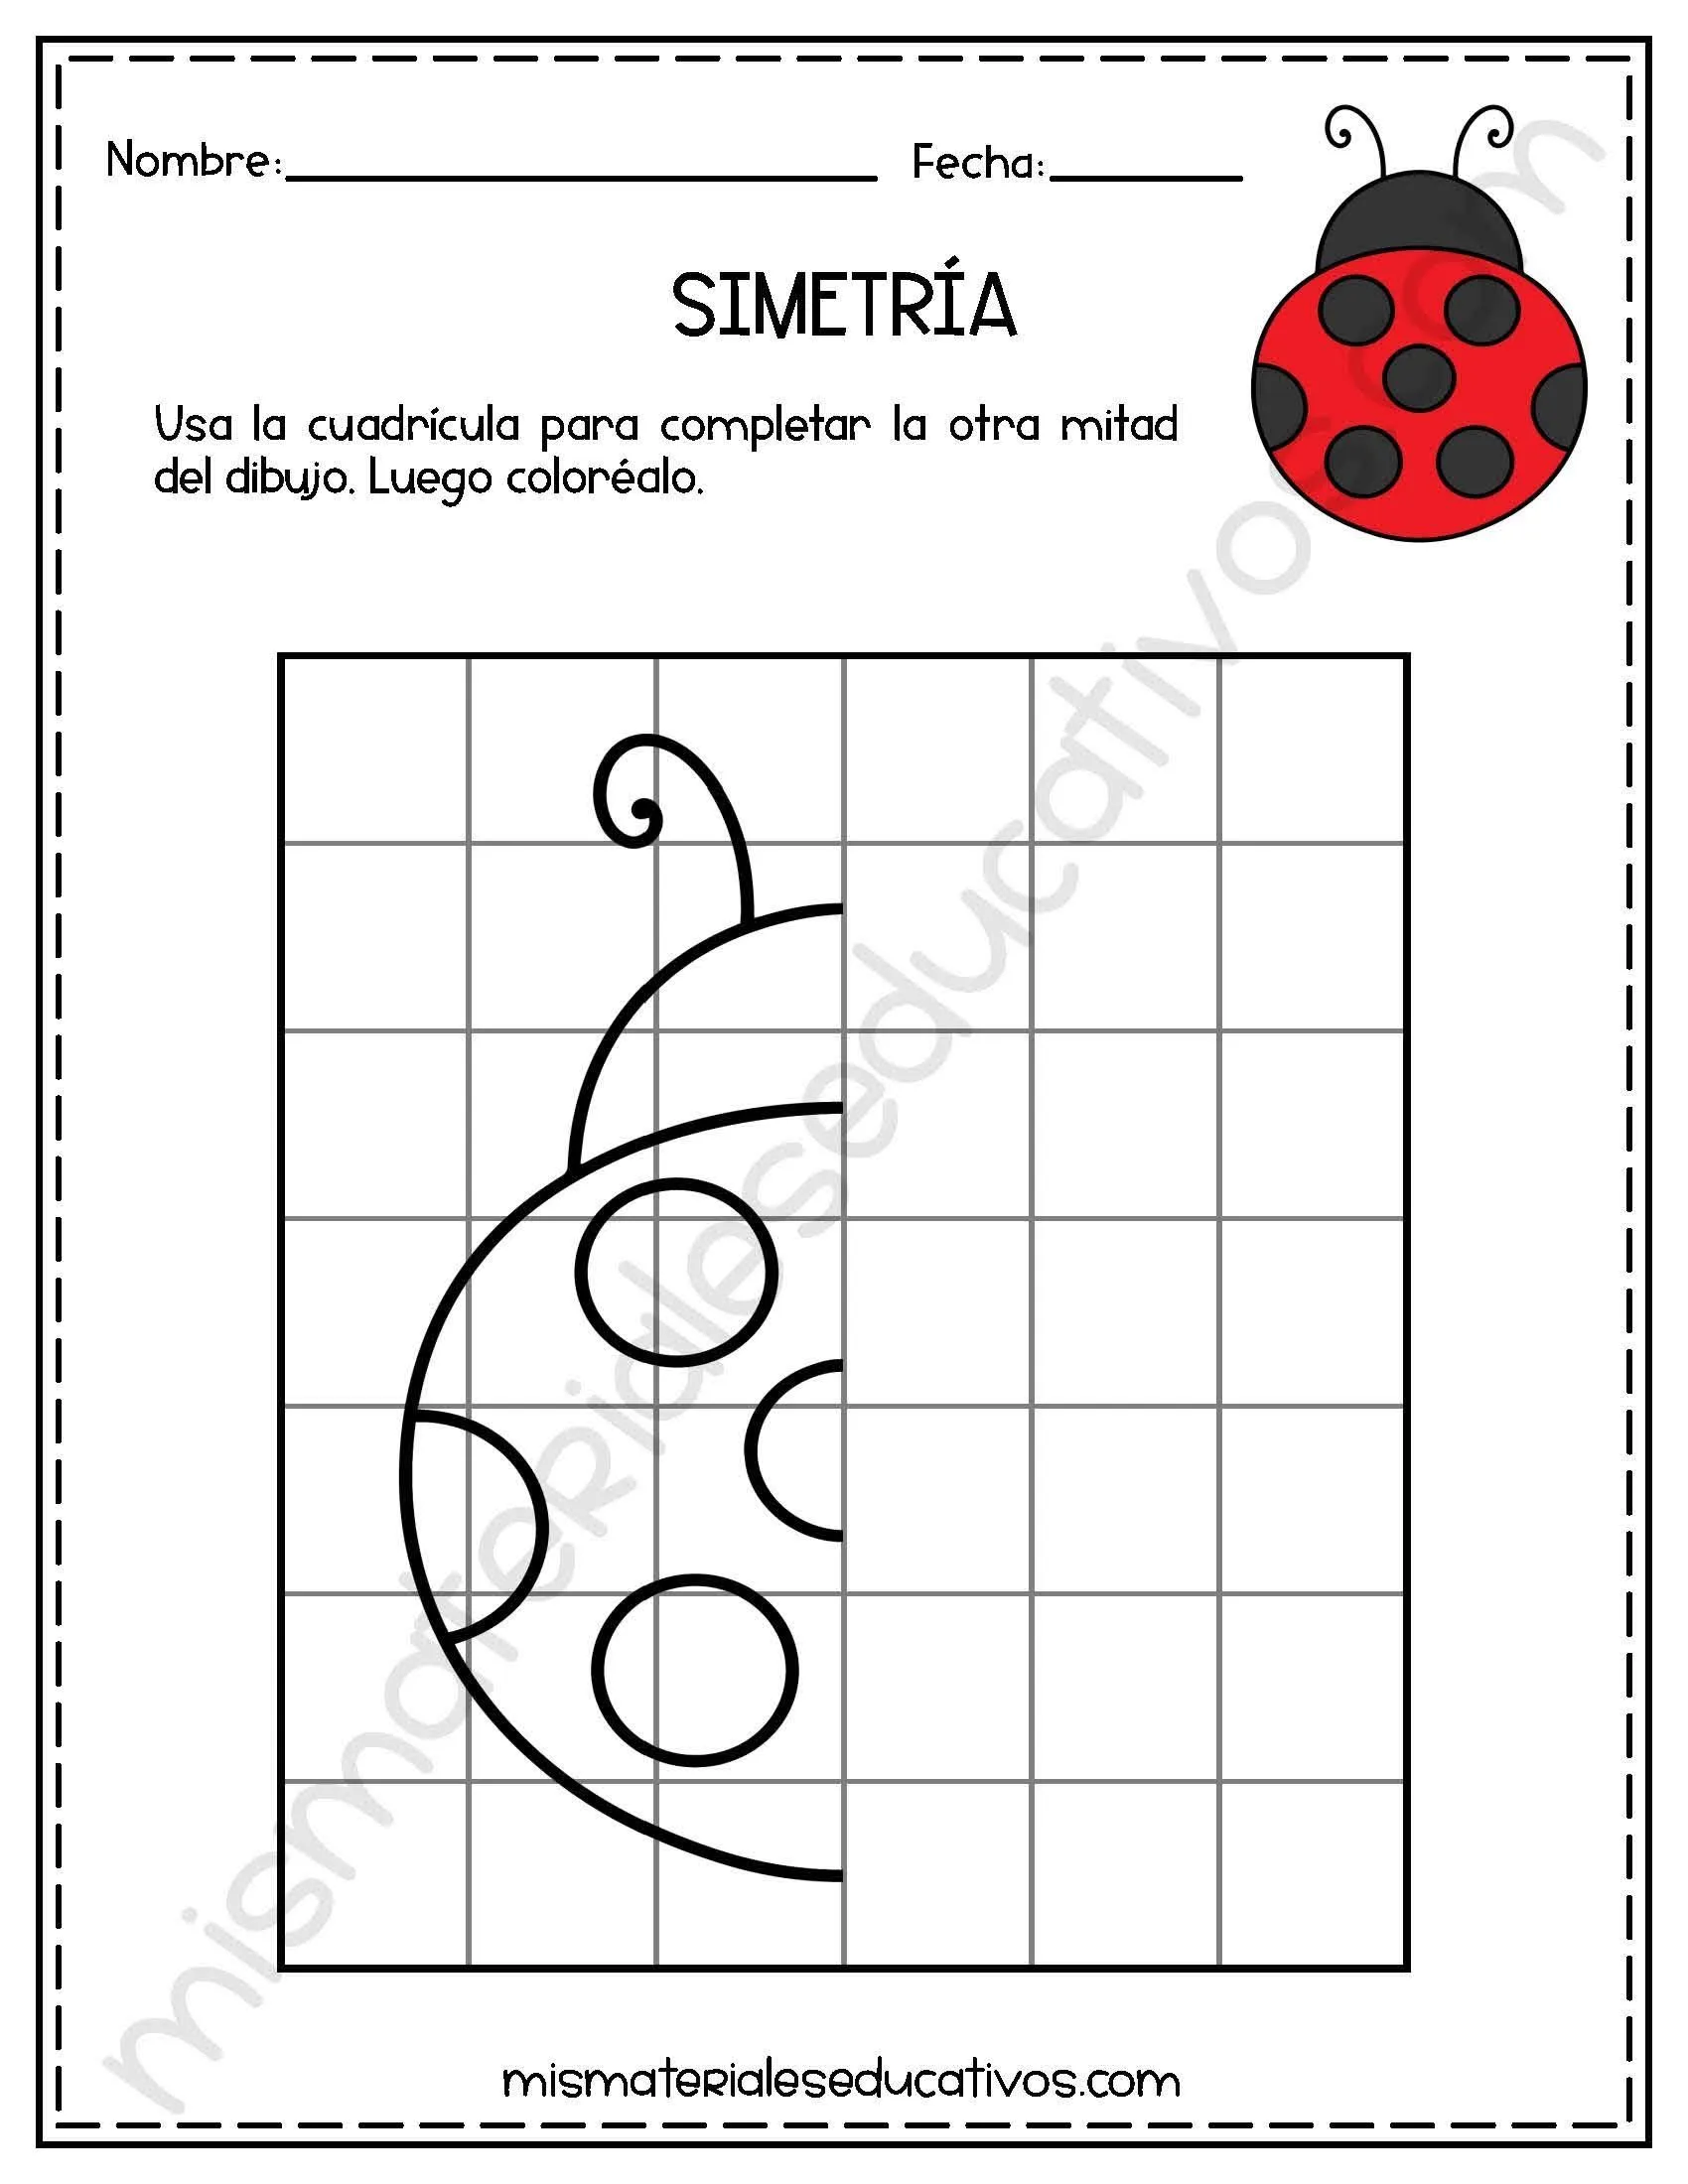 Mis Materiales Educativos: Ejercicios de simetría para niños usando  cuadrícula.